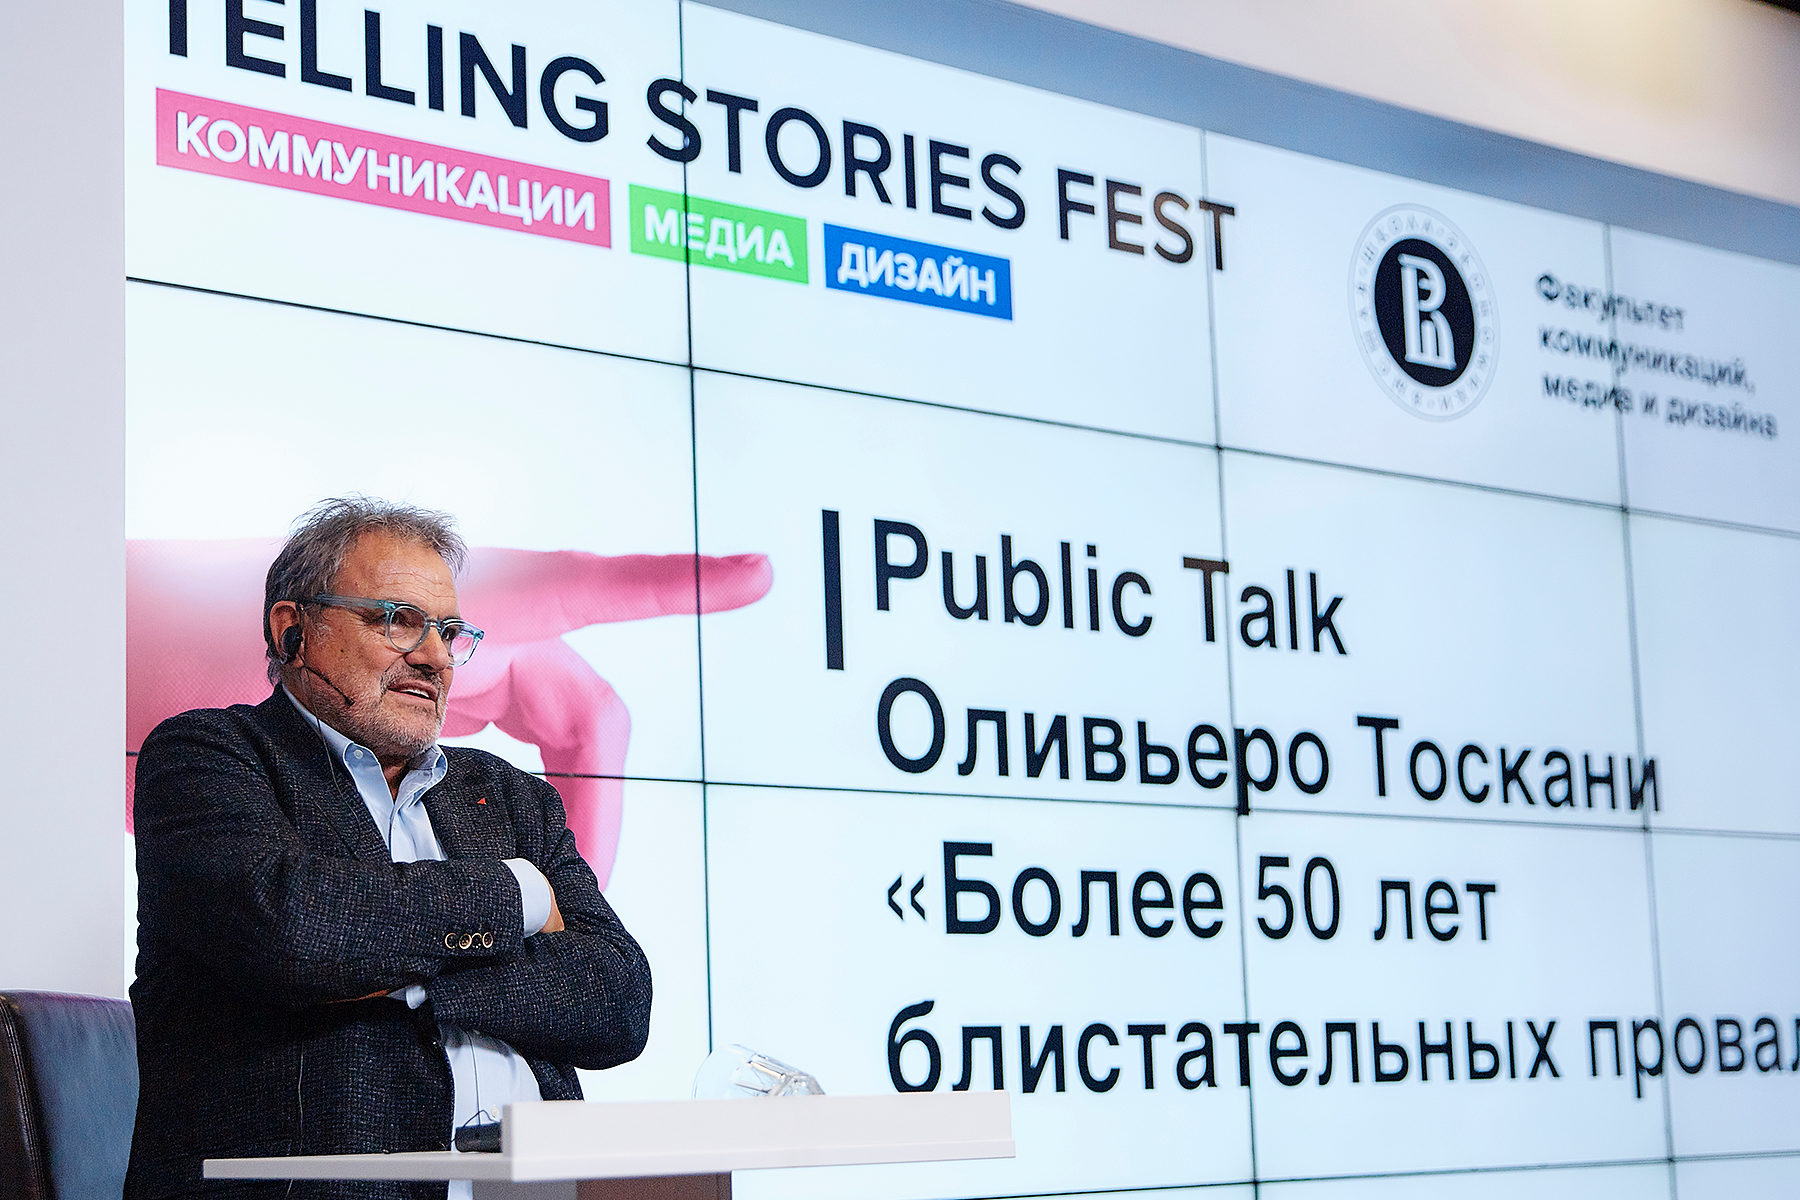 Фестиваль Telling Stories – события на сайте «Московские Сезоны»